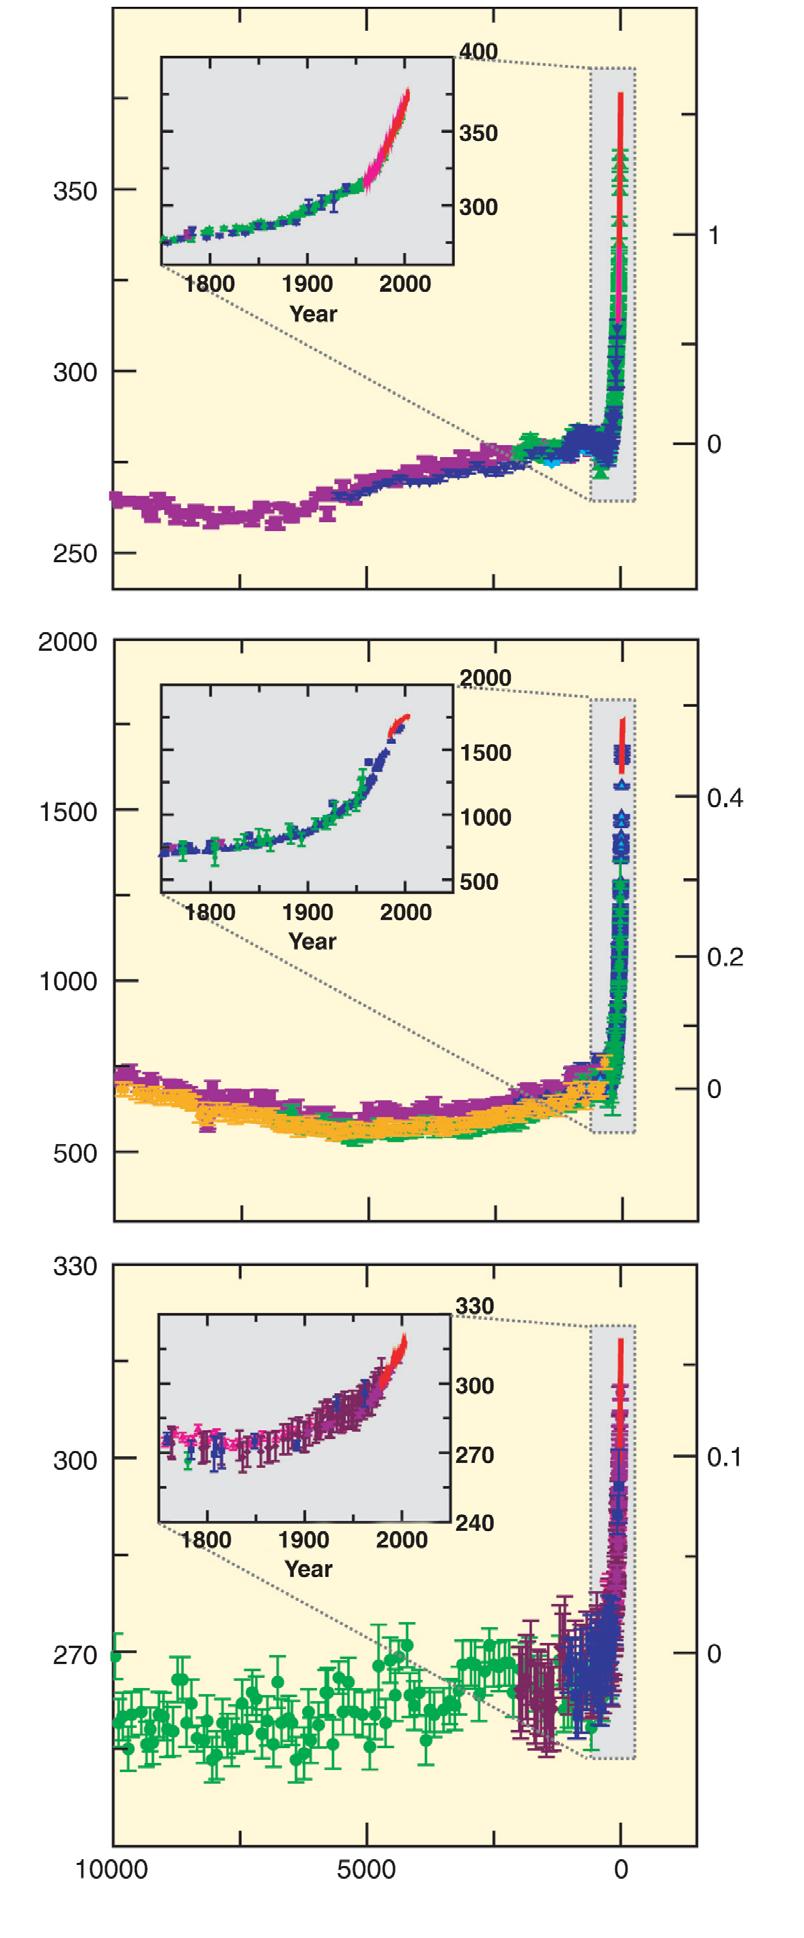 주제 2 변화의원인 CO 2 의전지구대기농도는산업화이전의약 280 ppm에서 2005년에약 379 ppm으로증가했다. CO 2 농도의증가율은연간변동성은있지만연속직접대기측정이시작된이래보다 (1960~2005년평균 : 1.4 ppm/yr) 지난 10년동안 (1995~2005년평균 : 1.9 ppm/yr) 이더높았다. {WG I 2.3, 7.